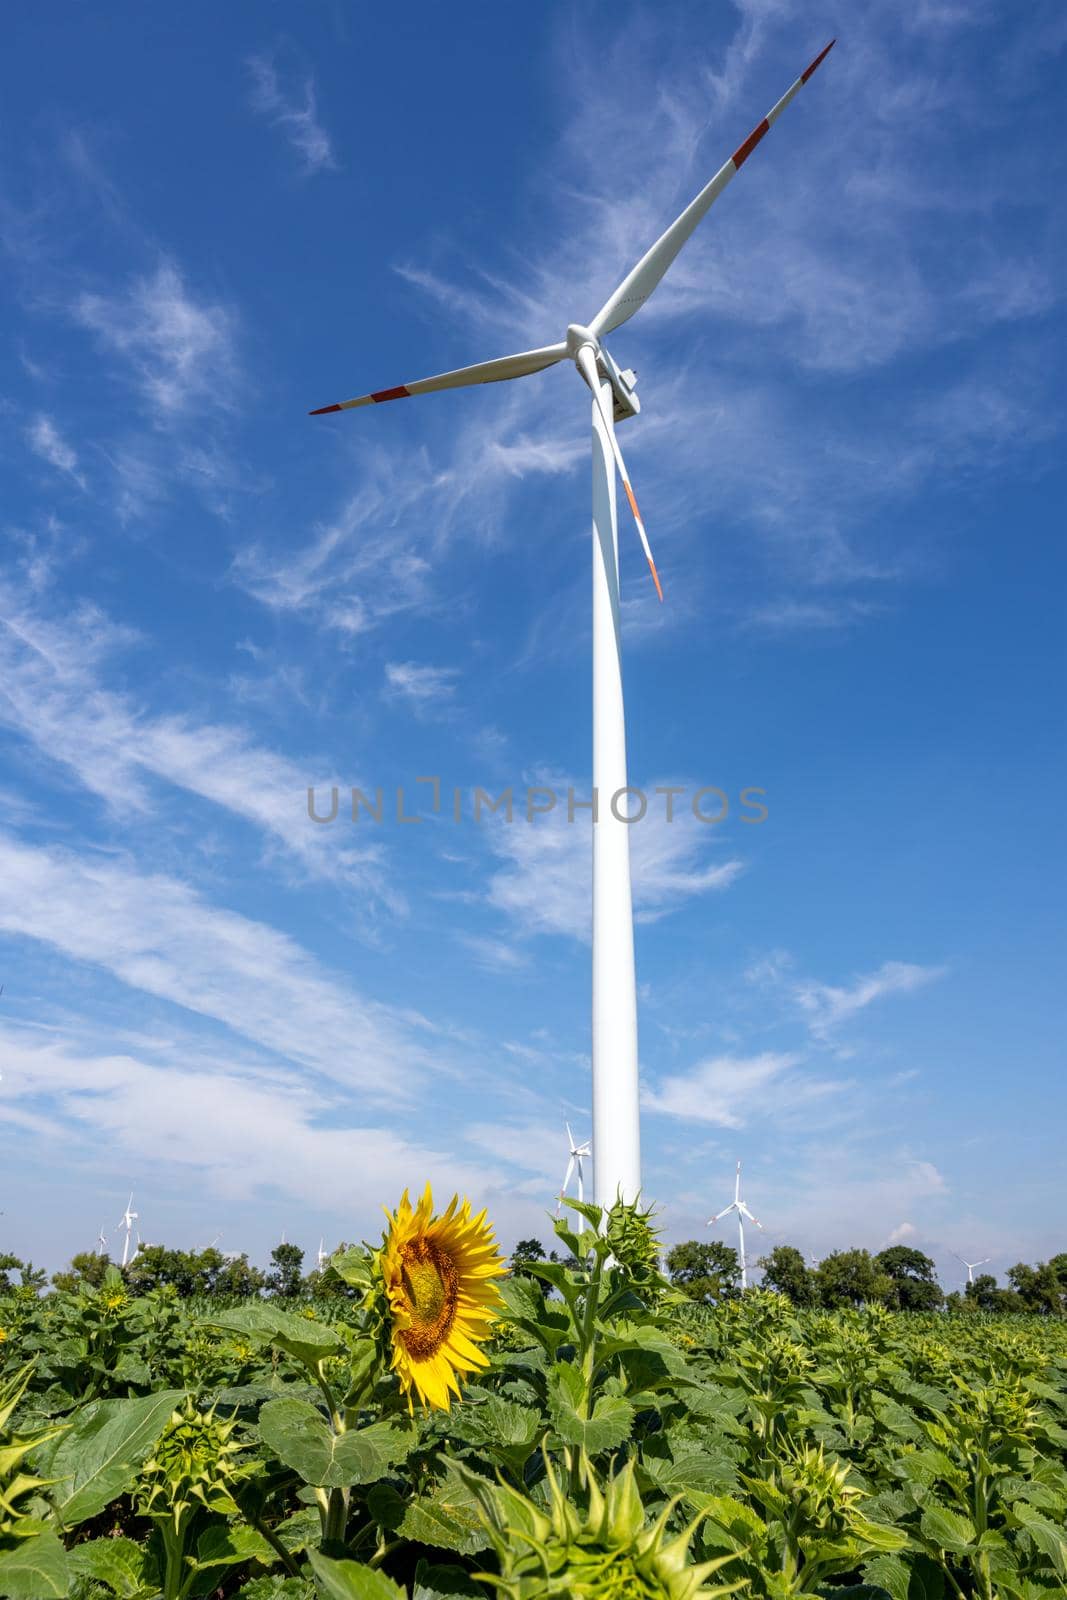 Wind turbine with a sunflower by elxeneize